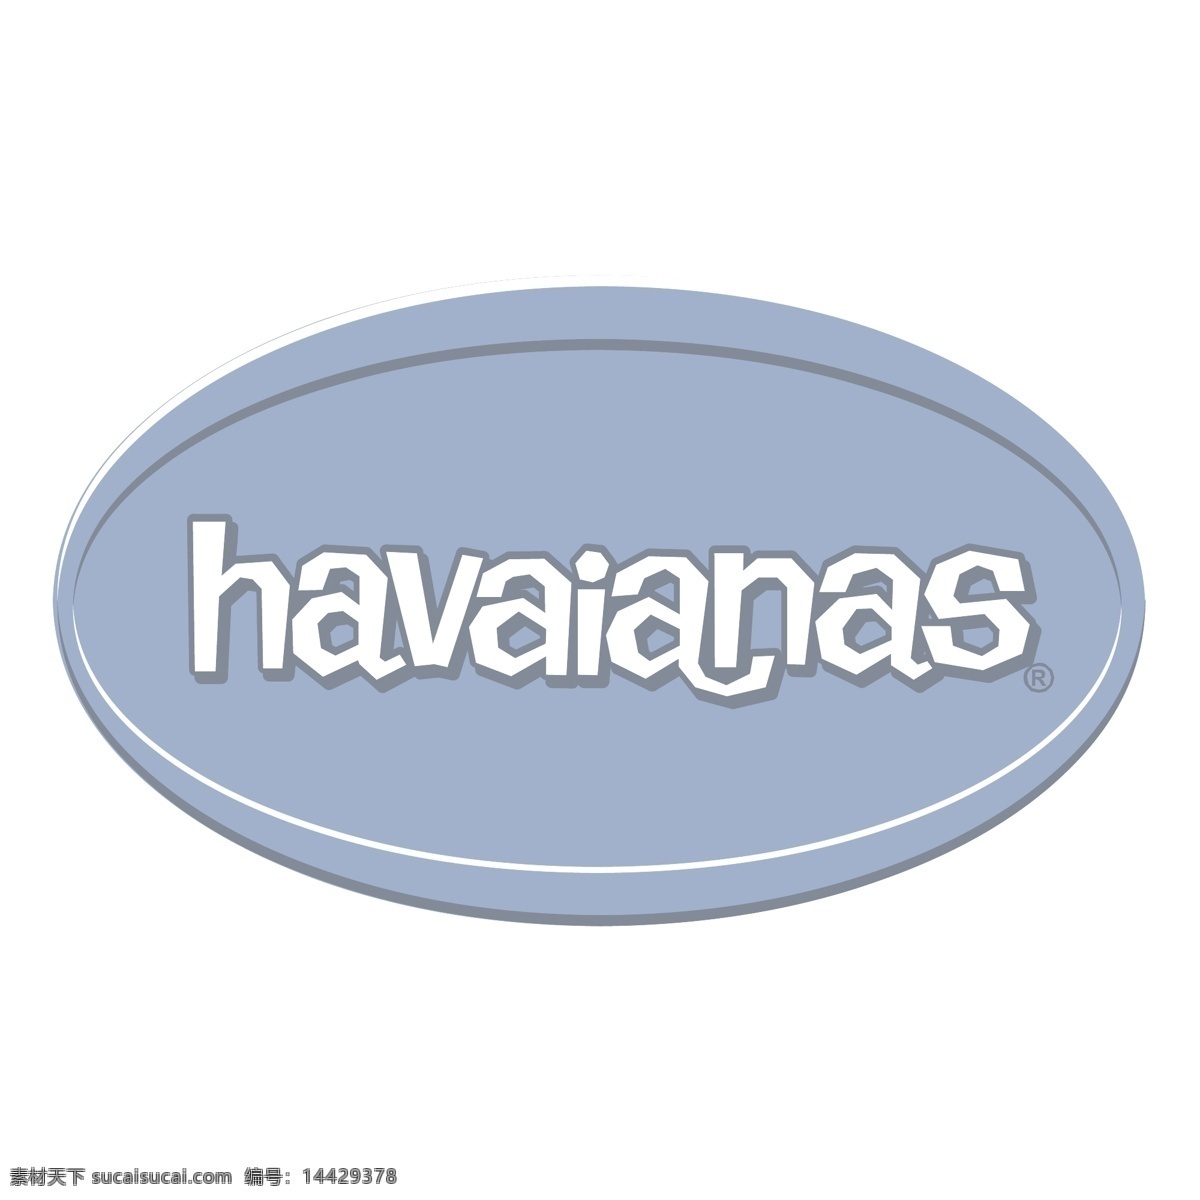 哈瓦那 人字 拖 自由 标识 psd源文件 logo设计